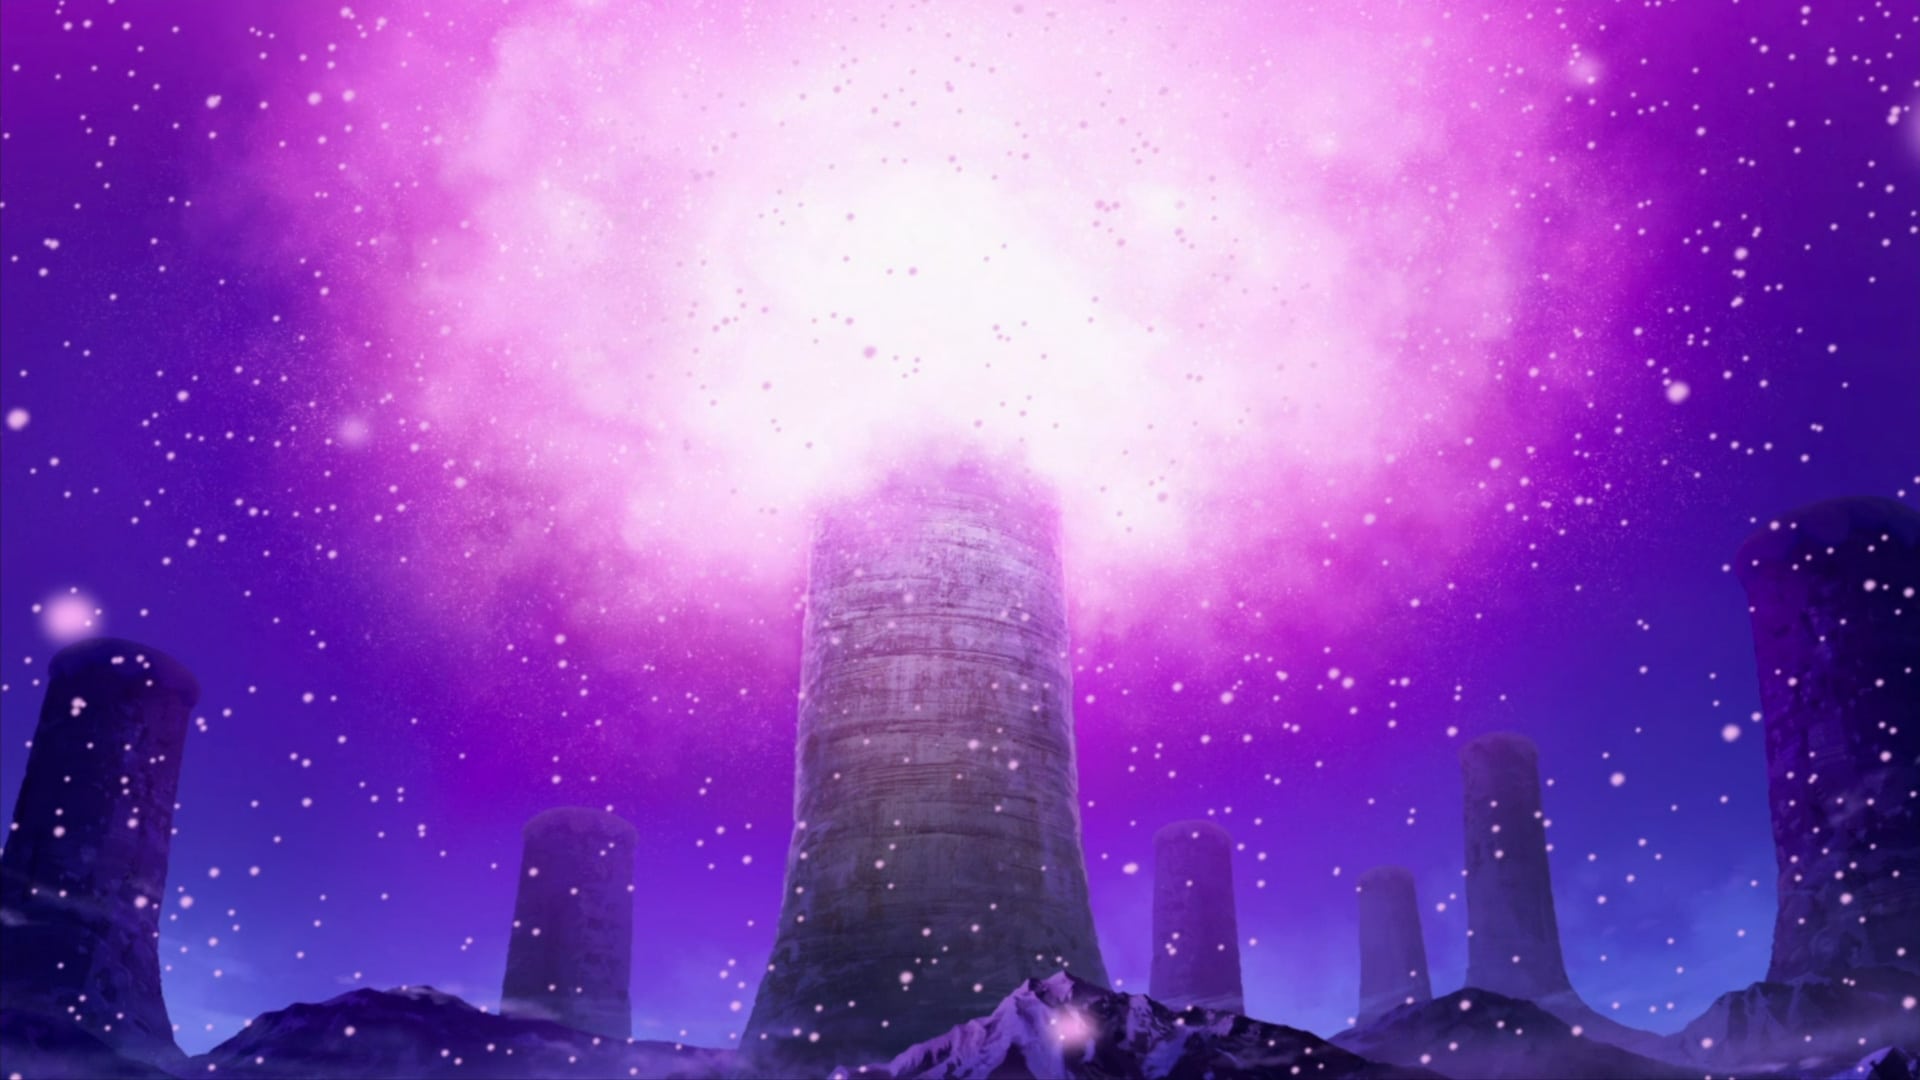 Poster Phim Đảo Hải Tặc 9: Nở Vào Mùa Đông, Hoa Sakura Diệu Kỳ (One Piece: Episode of Chopper Plus: Bloom in the Winter, Miracle Cherry Blossom)